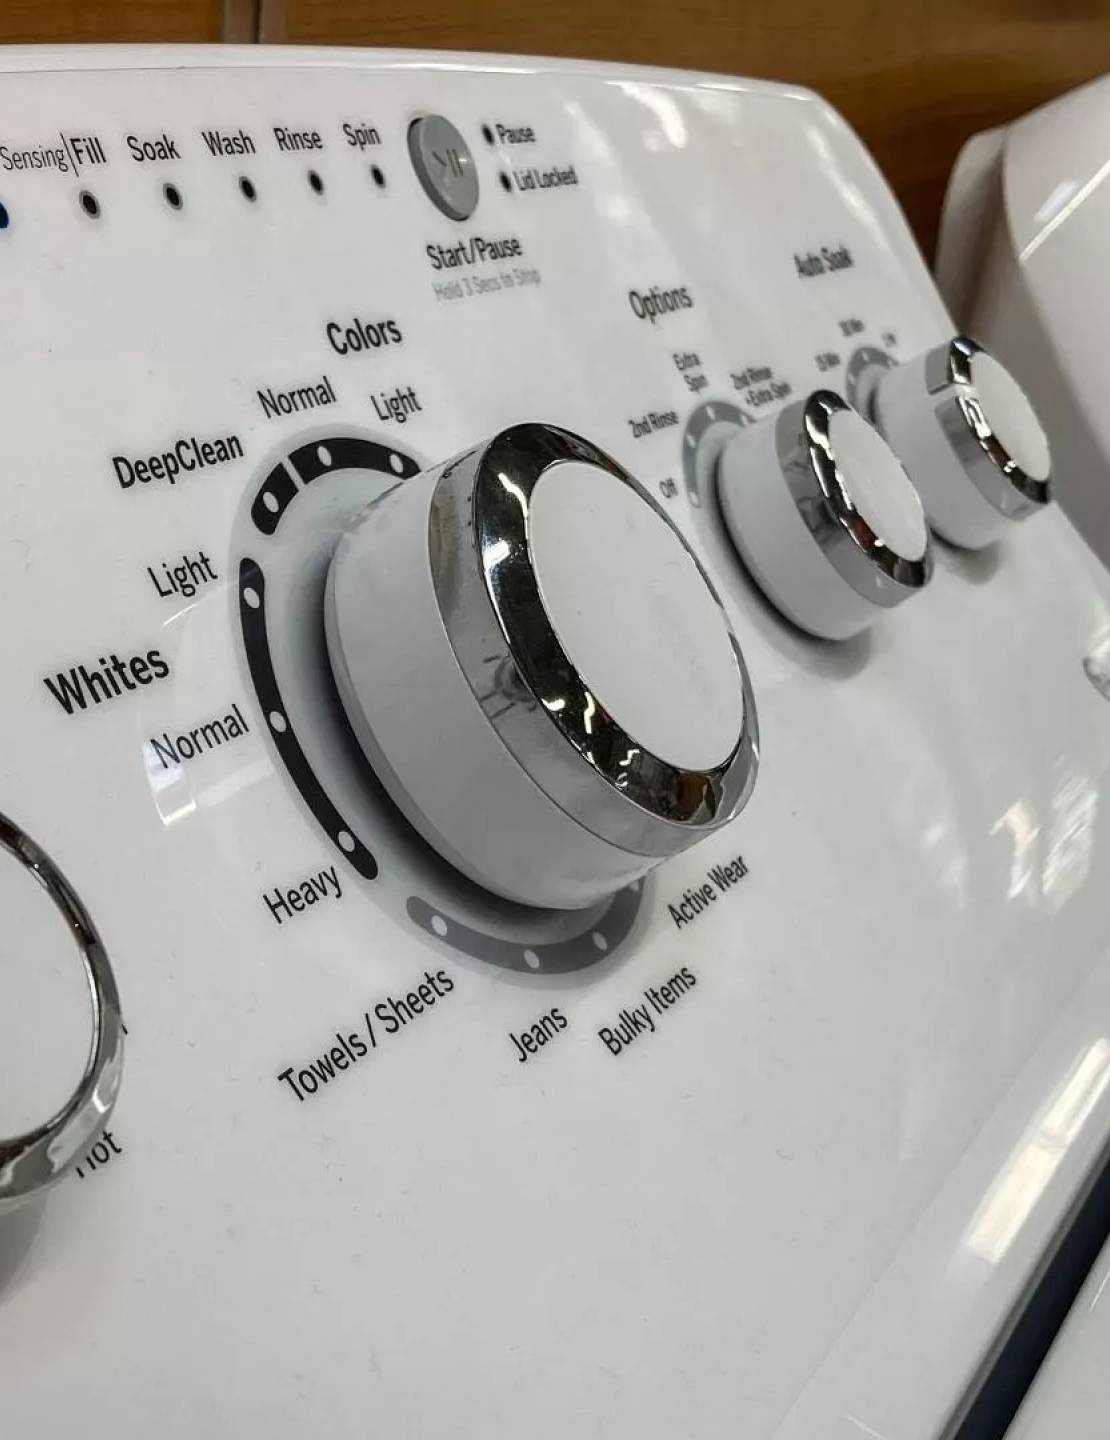 مواد شوینده برای ماشین لباسشویی به صورت پودر و مایع بهتر است یا قرص؟